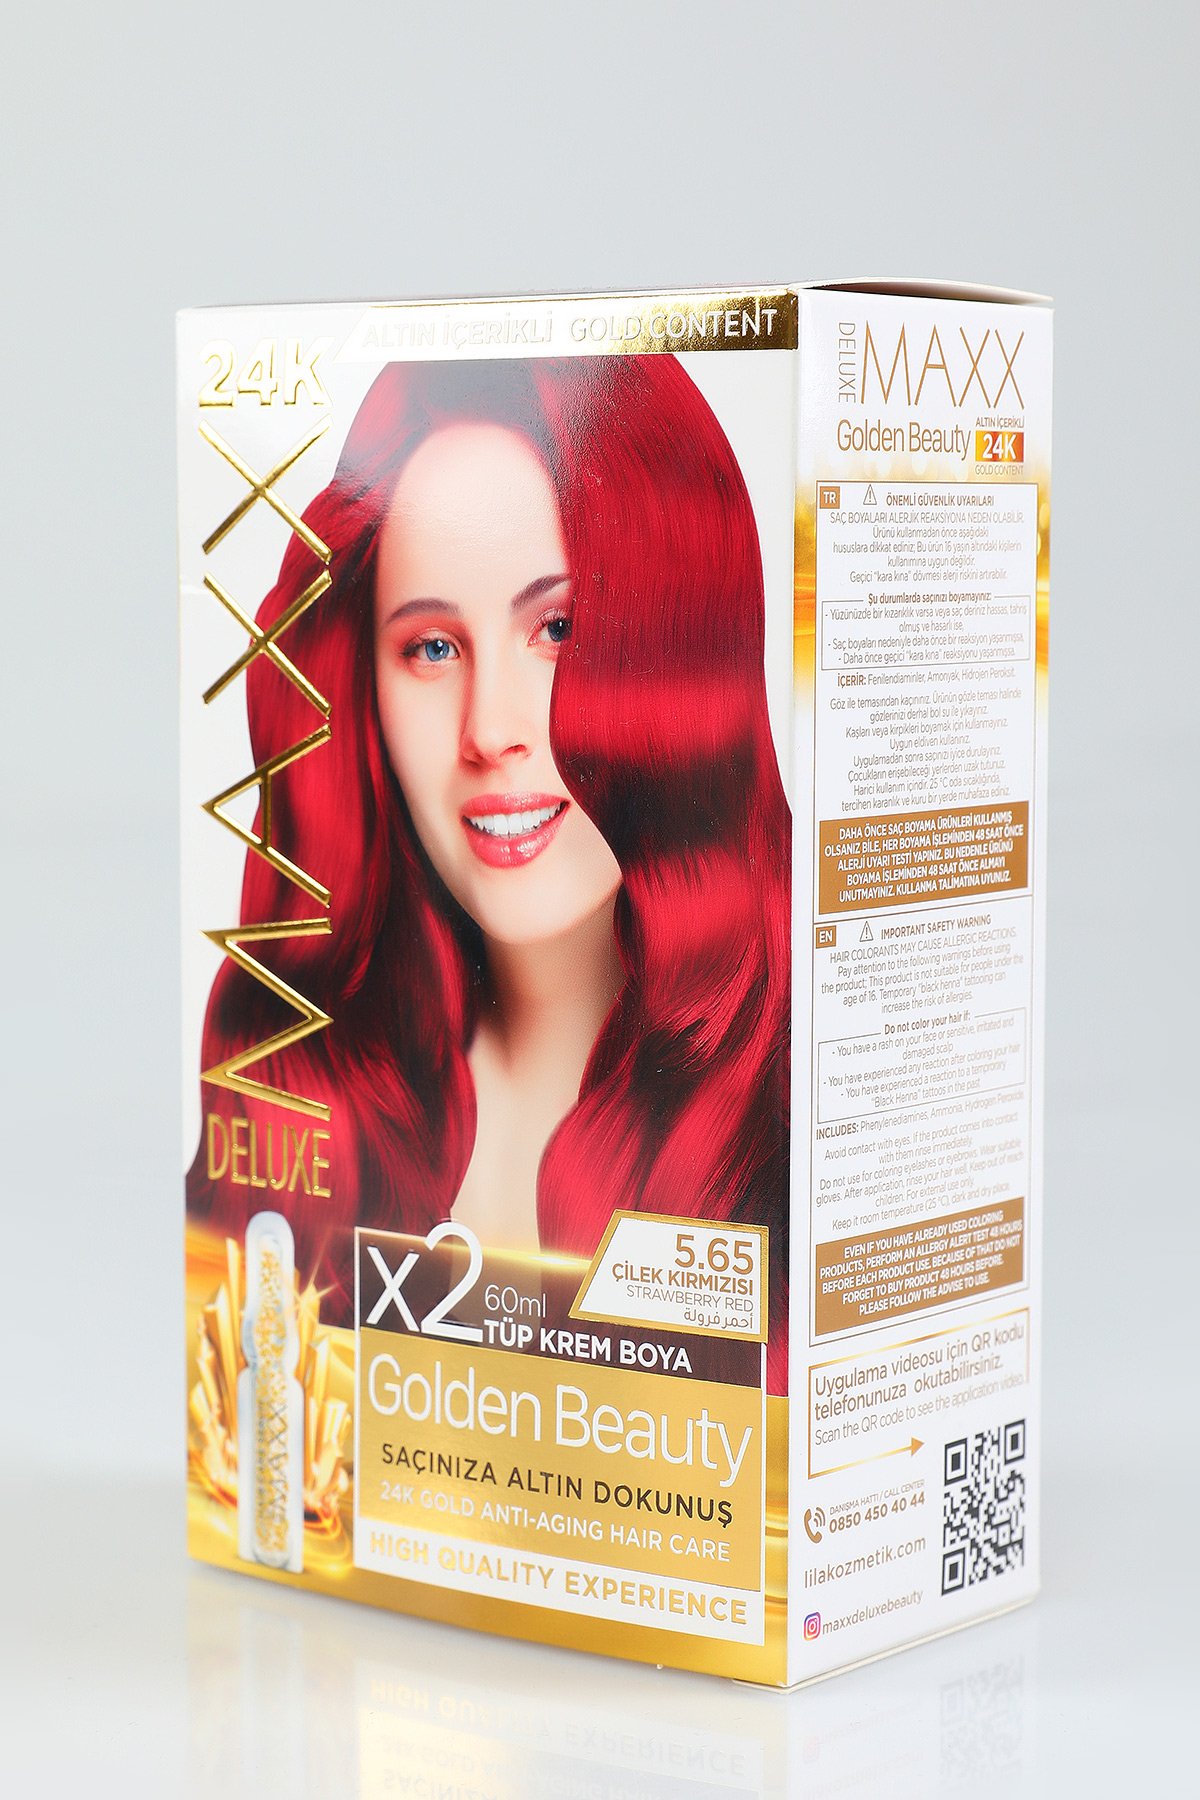 Standart Maxx Deluxe Golden Beauty Saç Boyası 5.65 Çilek Kırmızısı 450052-  tozlu.com